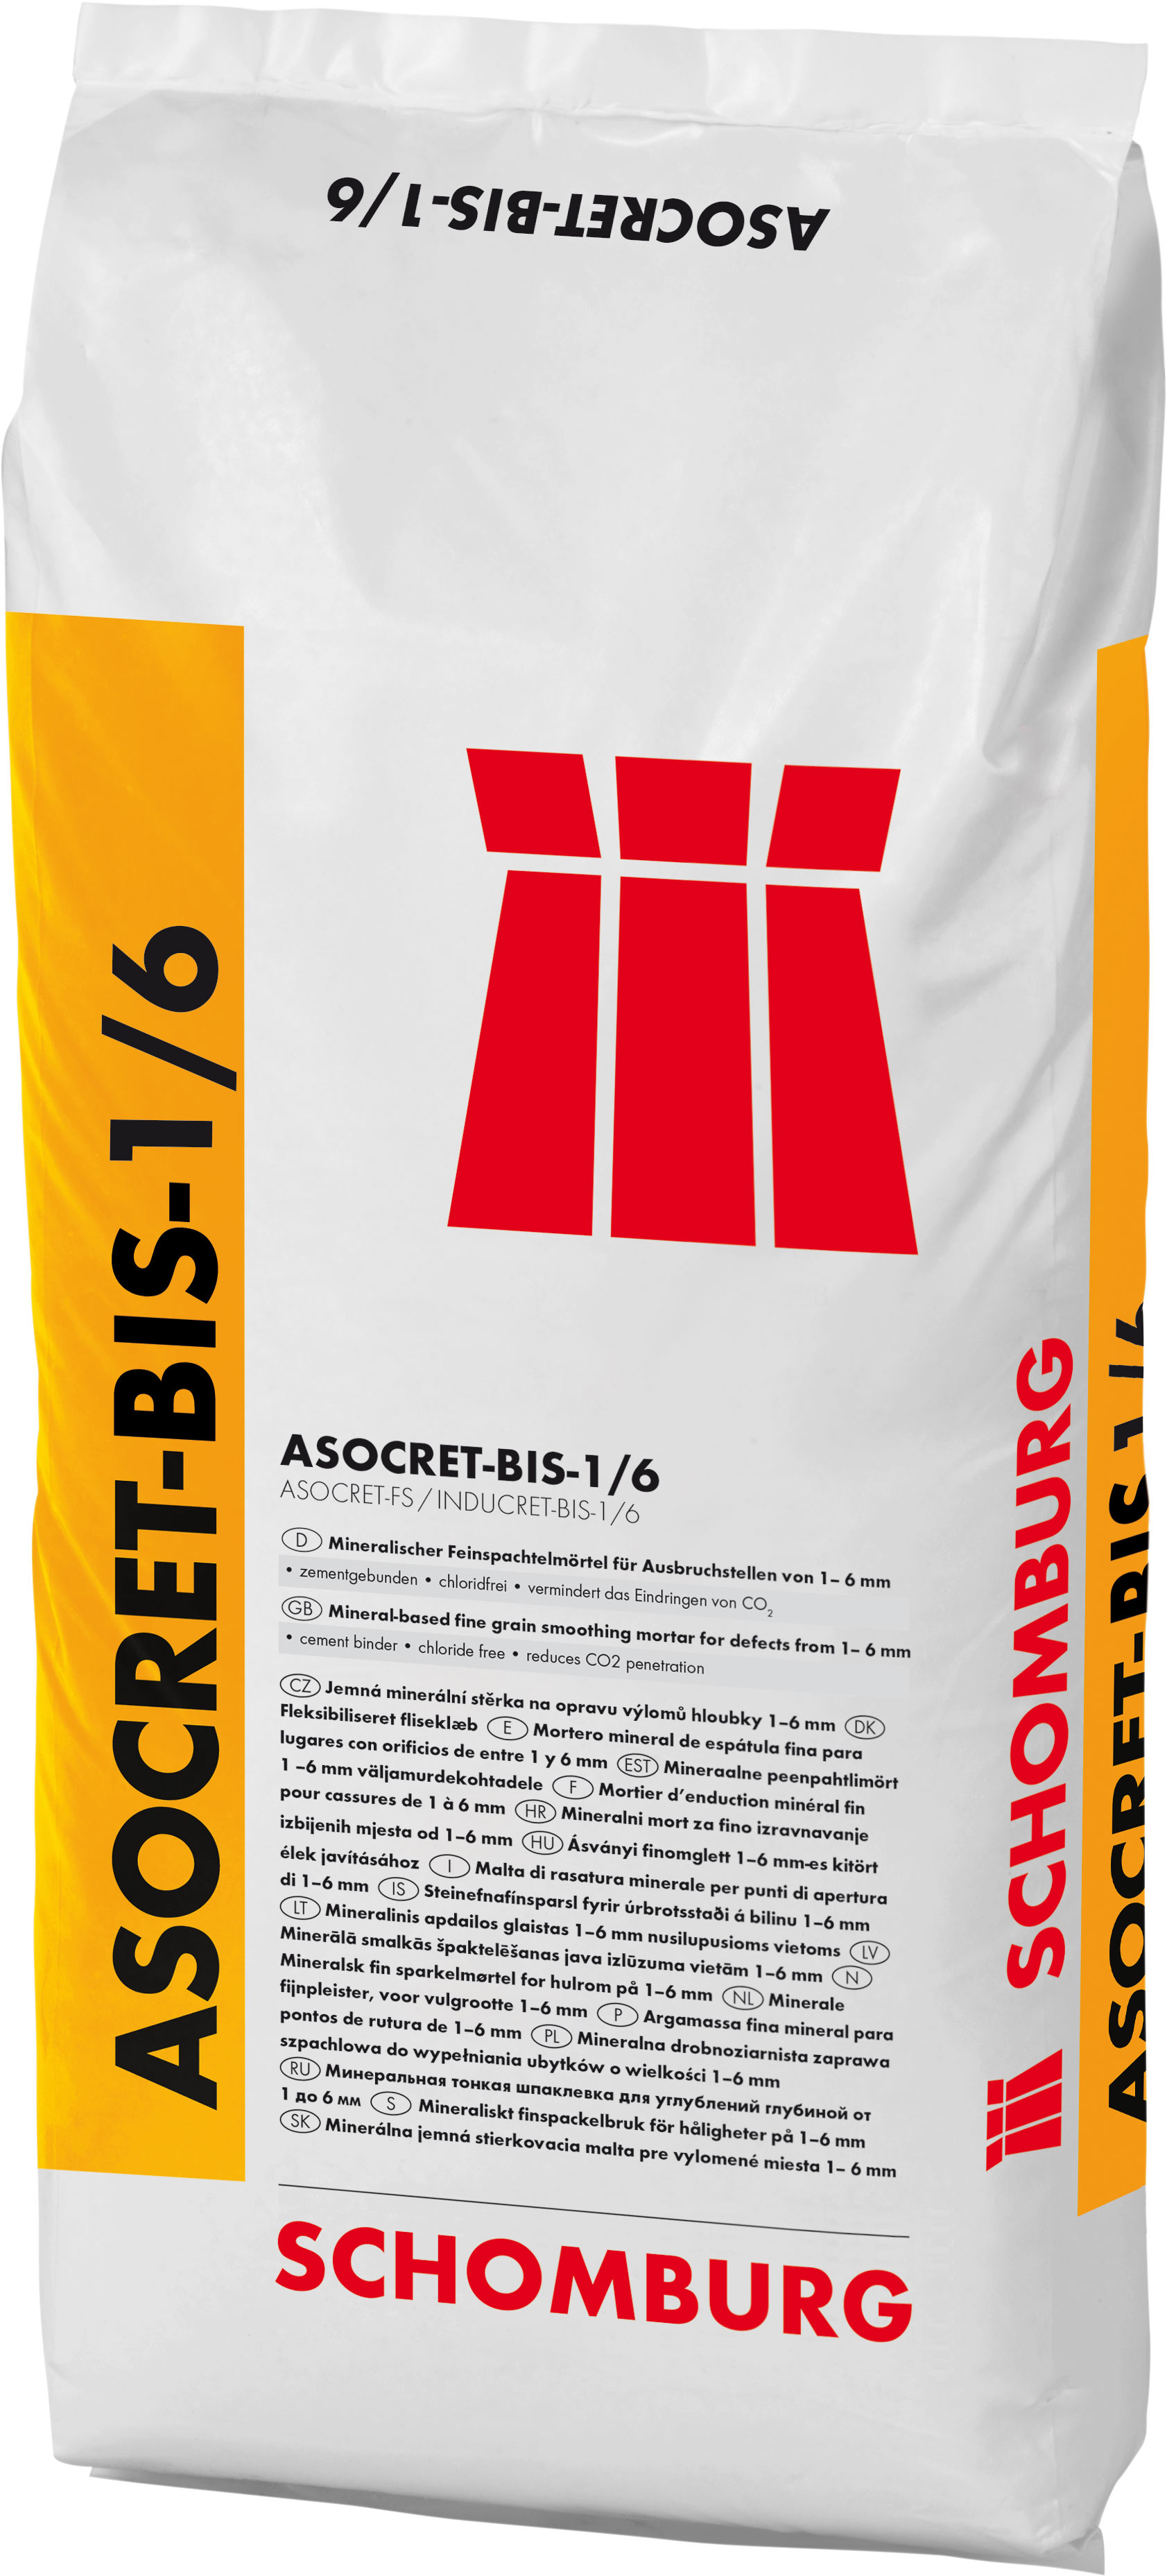 Schomburg ASOCRET-KS/HB (INDUCRET-BIS 0/2), 25 kg